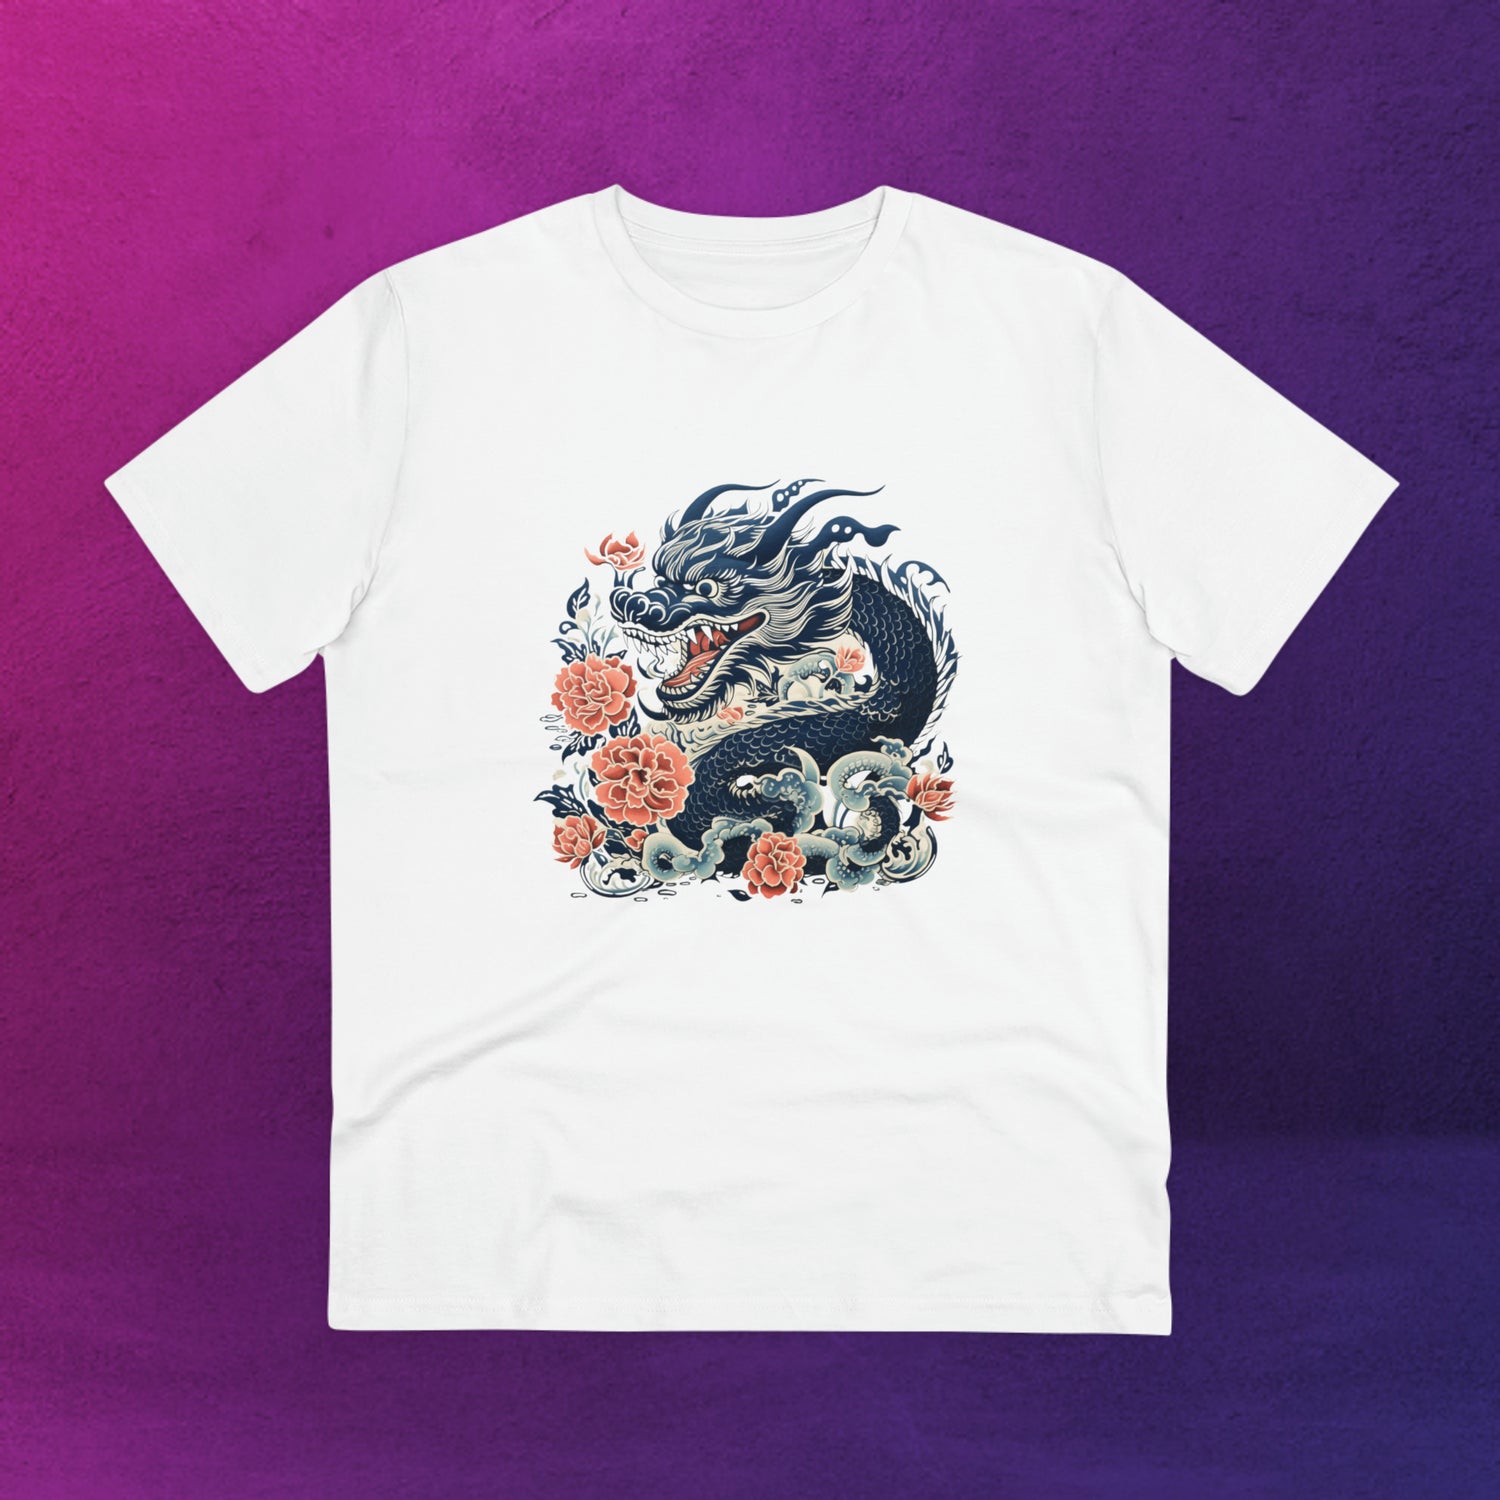 Tee-shirt blanc avec un design de dragon entouré de fleurs